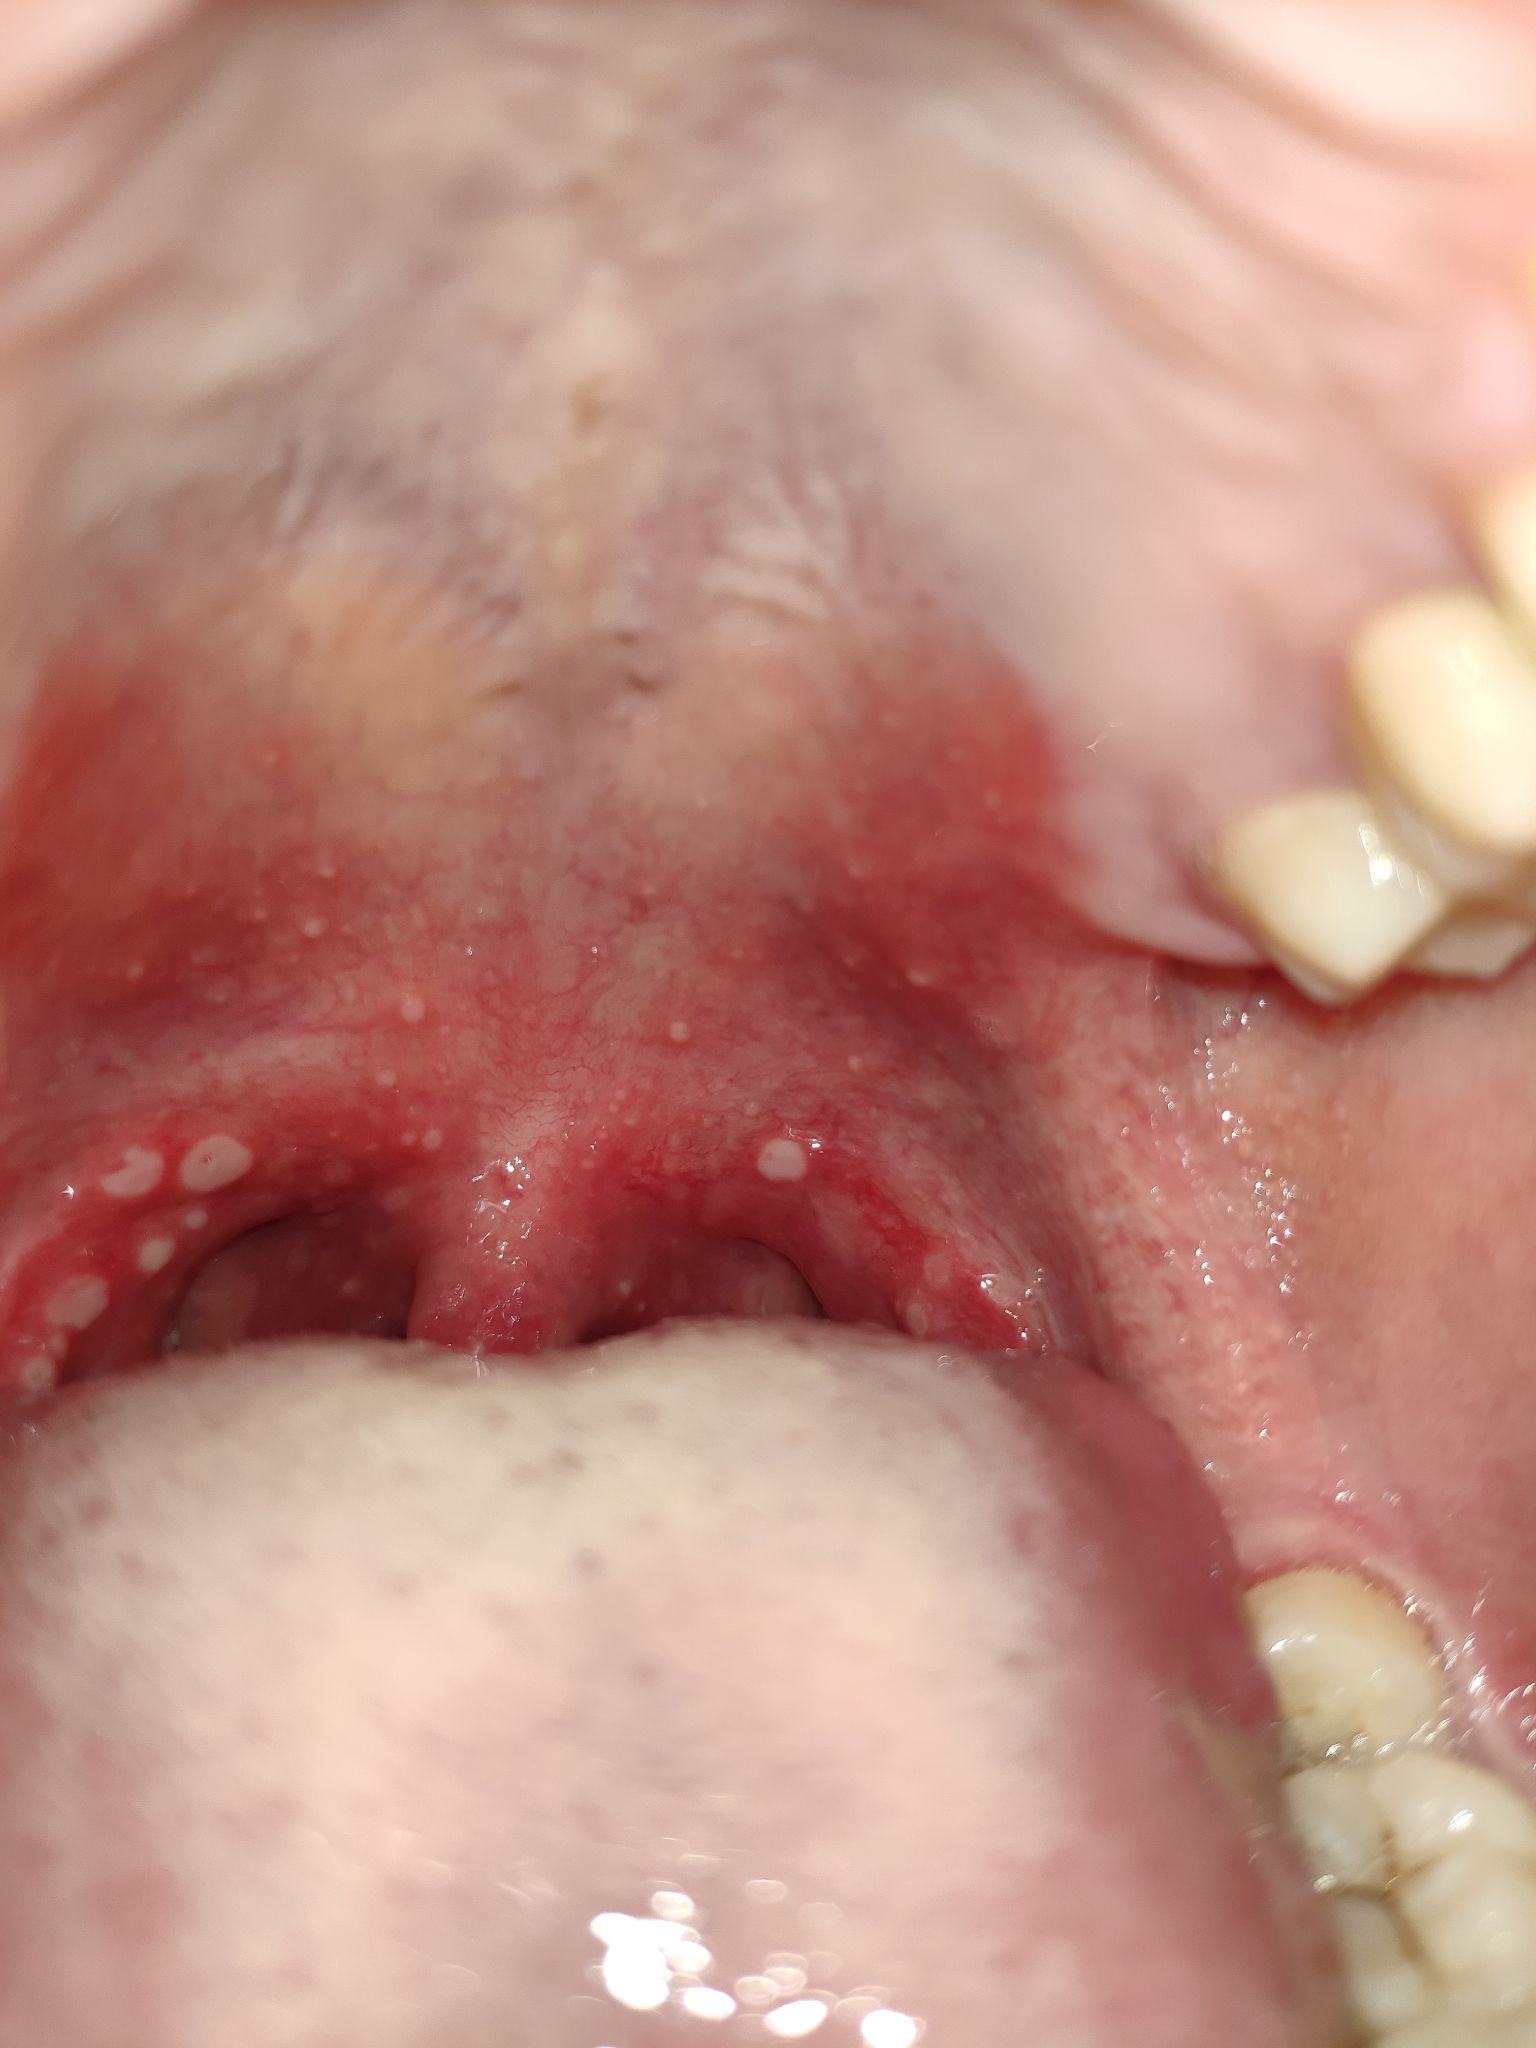 喉咙内壁有白色溃疡状图片